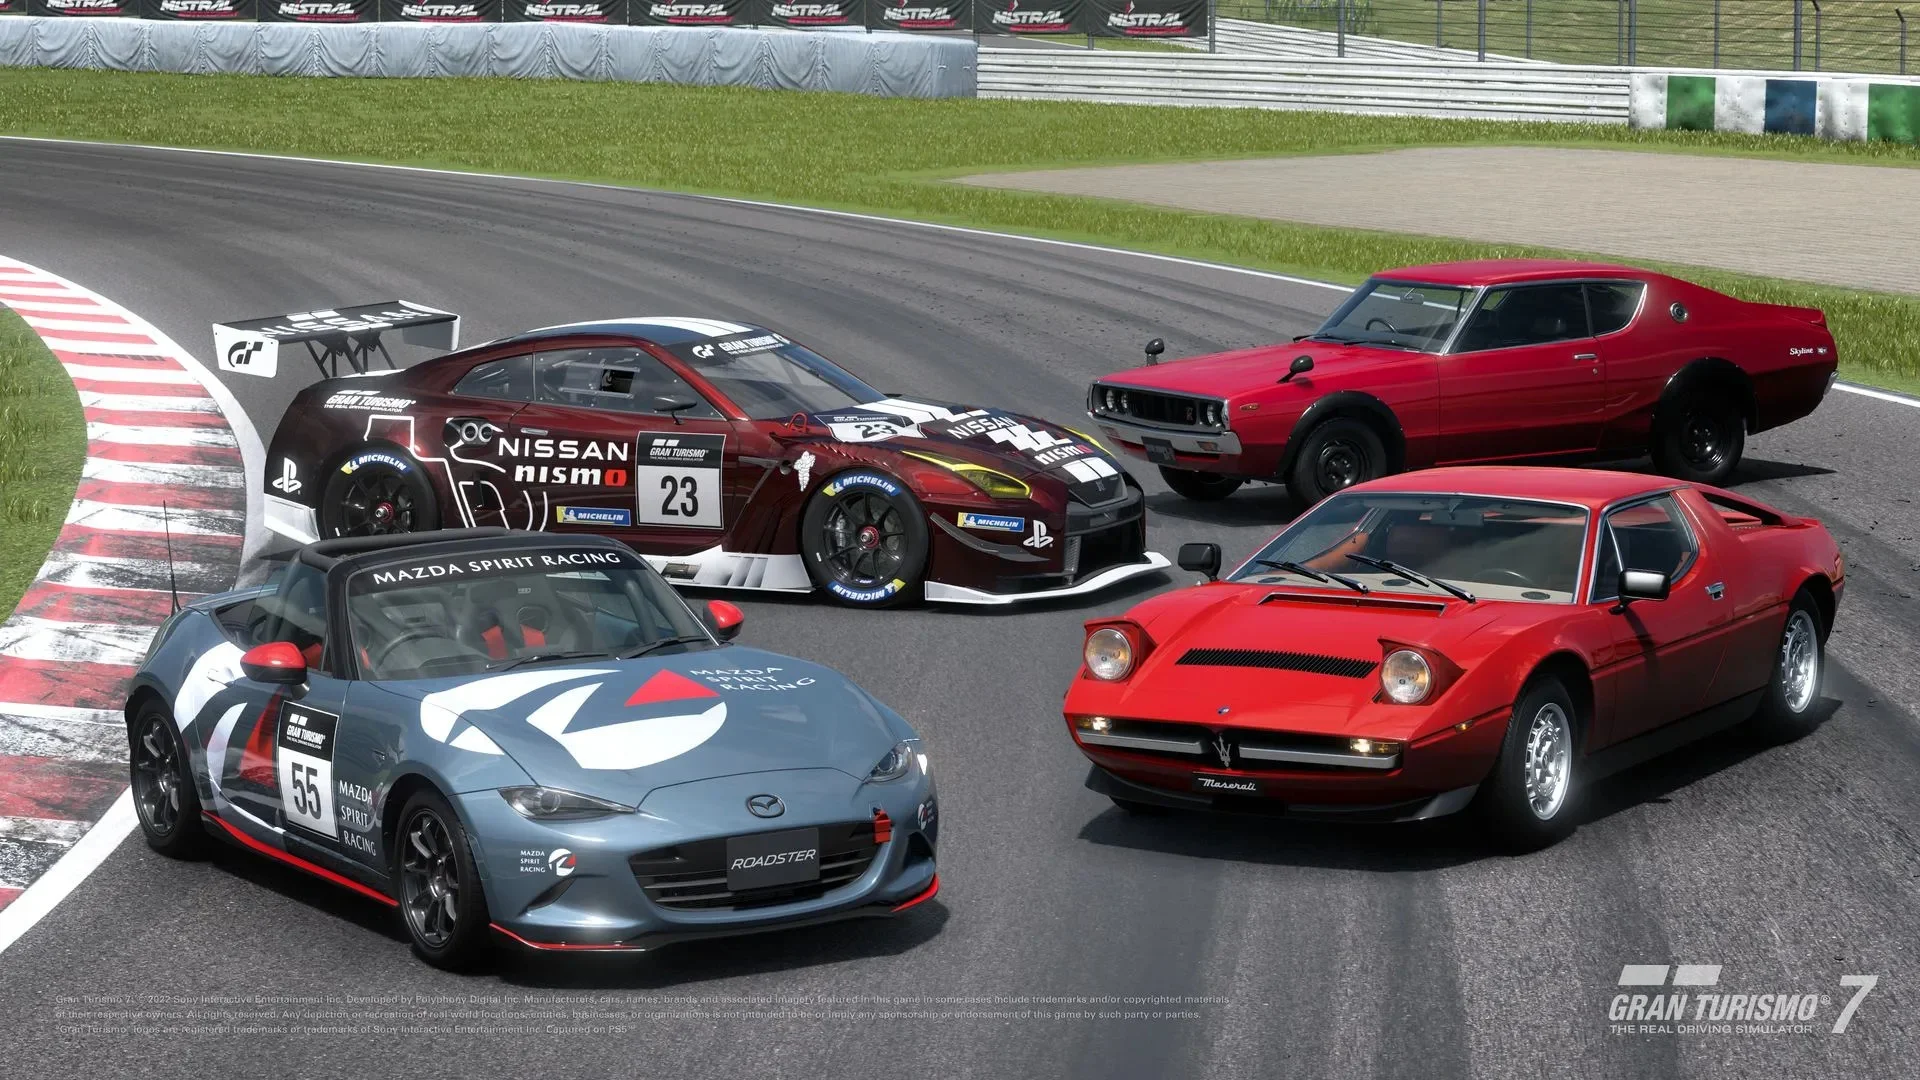 Immagine di Gran Turismo 7 disponibile l'update 1.25 con quattro nuove auto tra cui un'icona italiana